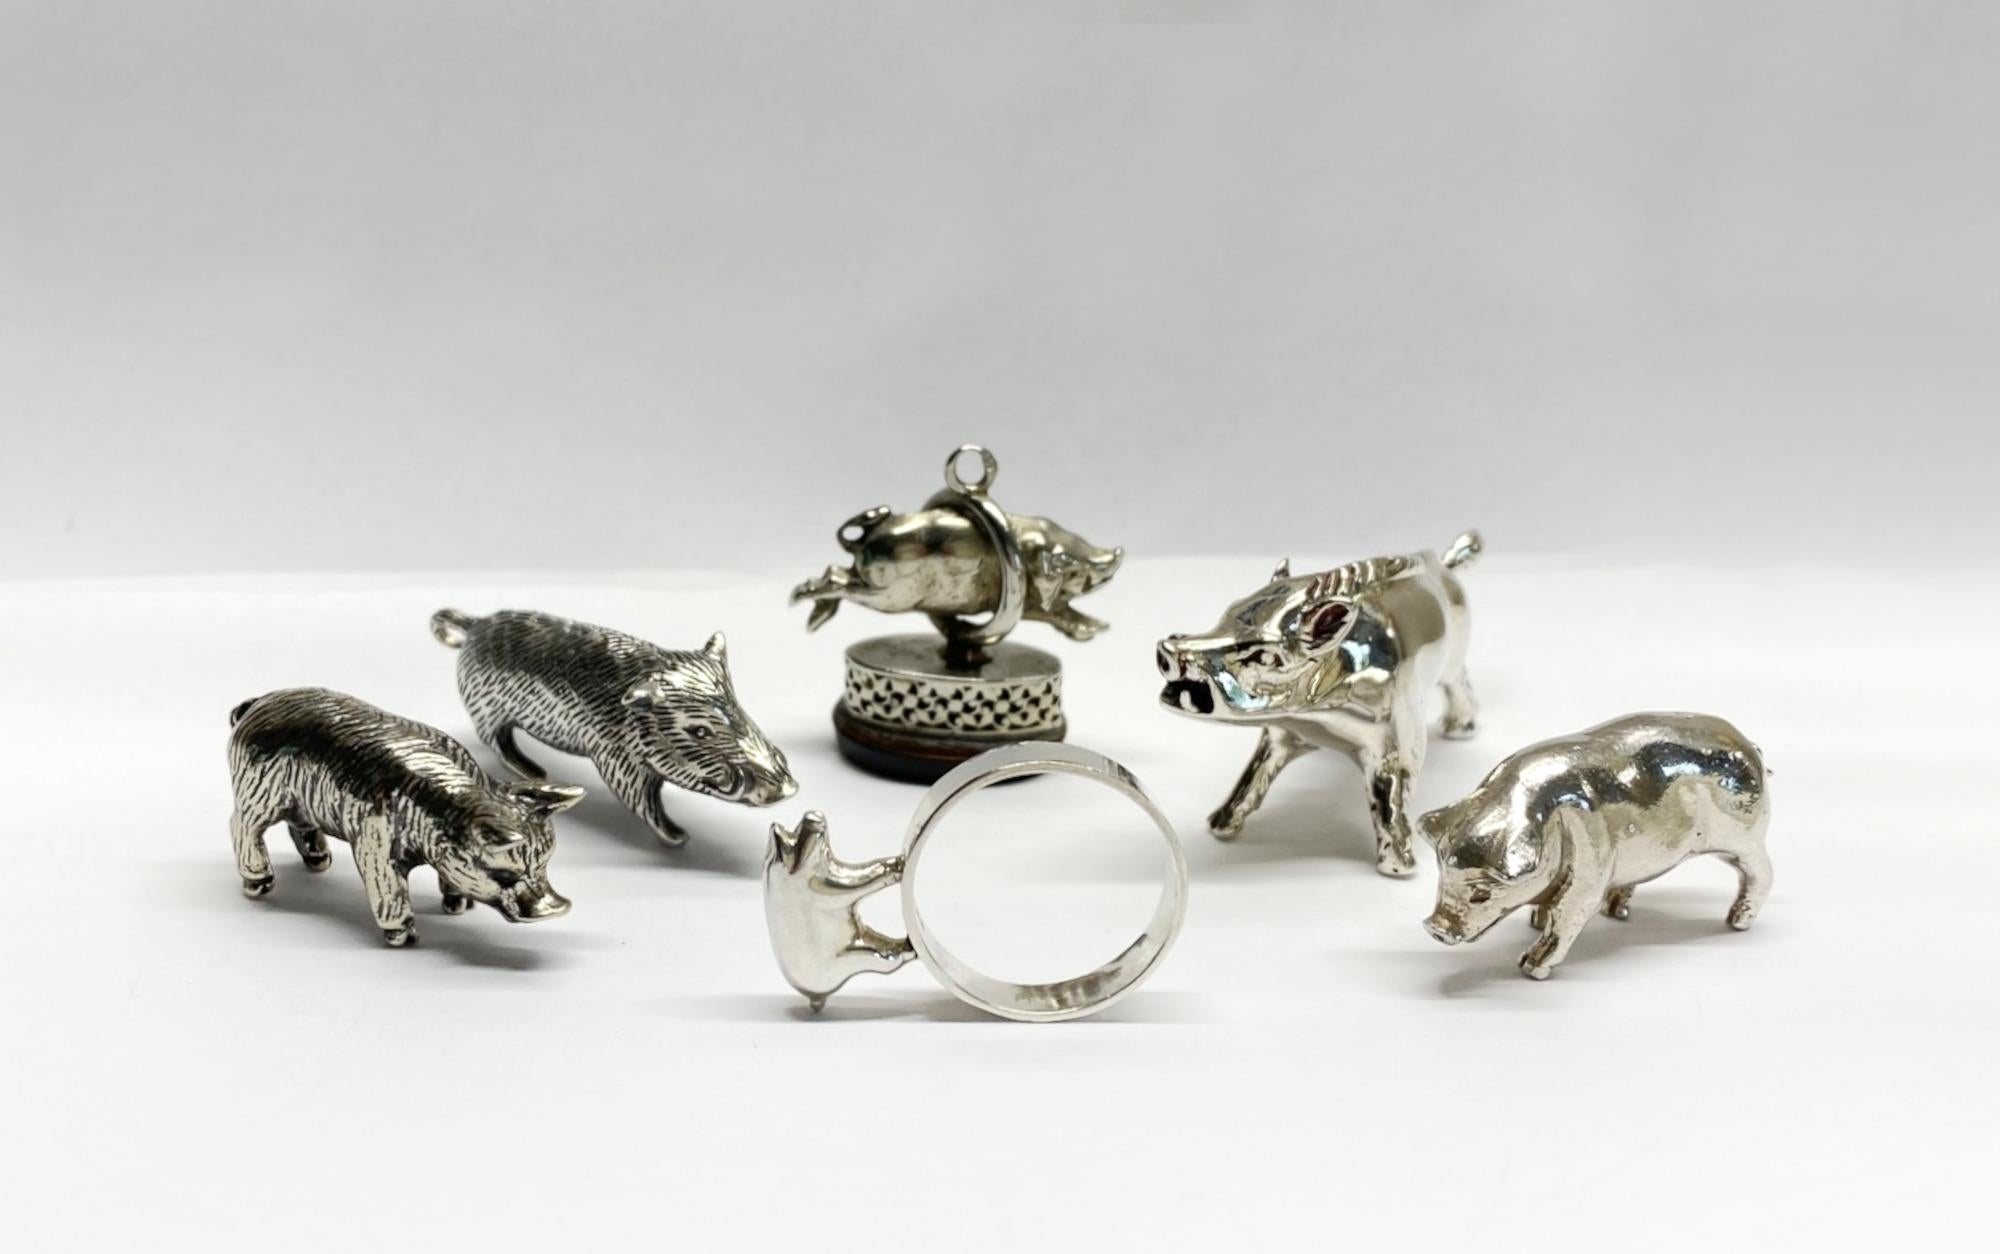 Sammlung von sechs Miniature Silver Pigs & Wildschweinen 

Eine entzückende Sammlung von sechs Miniatur-Schweinen und Wildschweinen aus massivem Silber mit einigen schönen Details. 

Das Set stammt aus Südwestfrankreich und hat ein Gesamtgewicht von